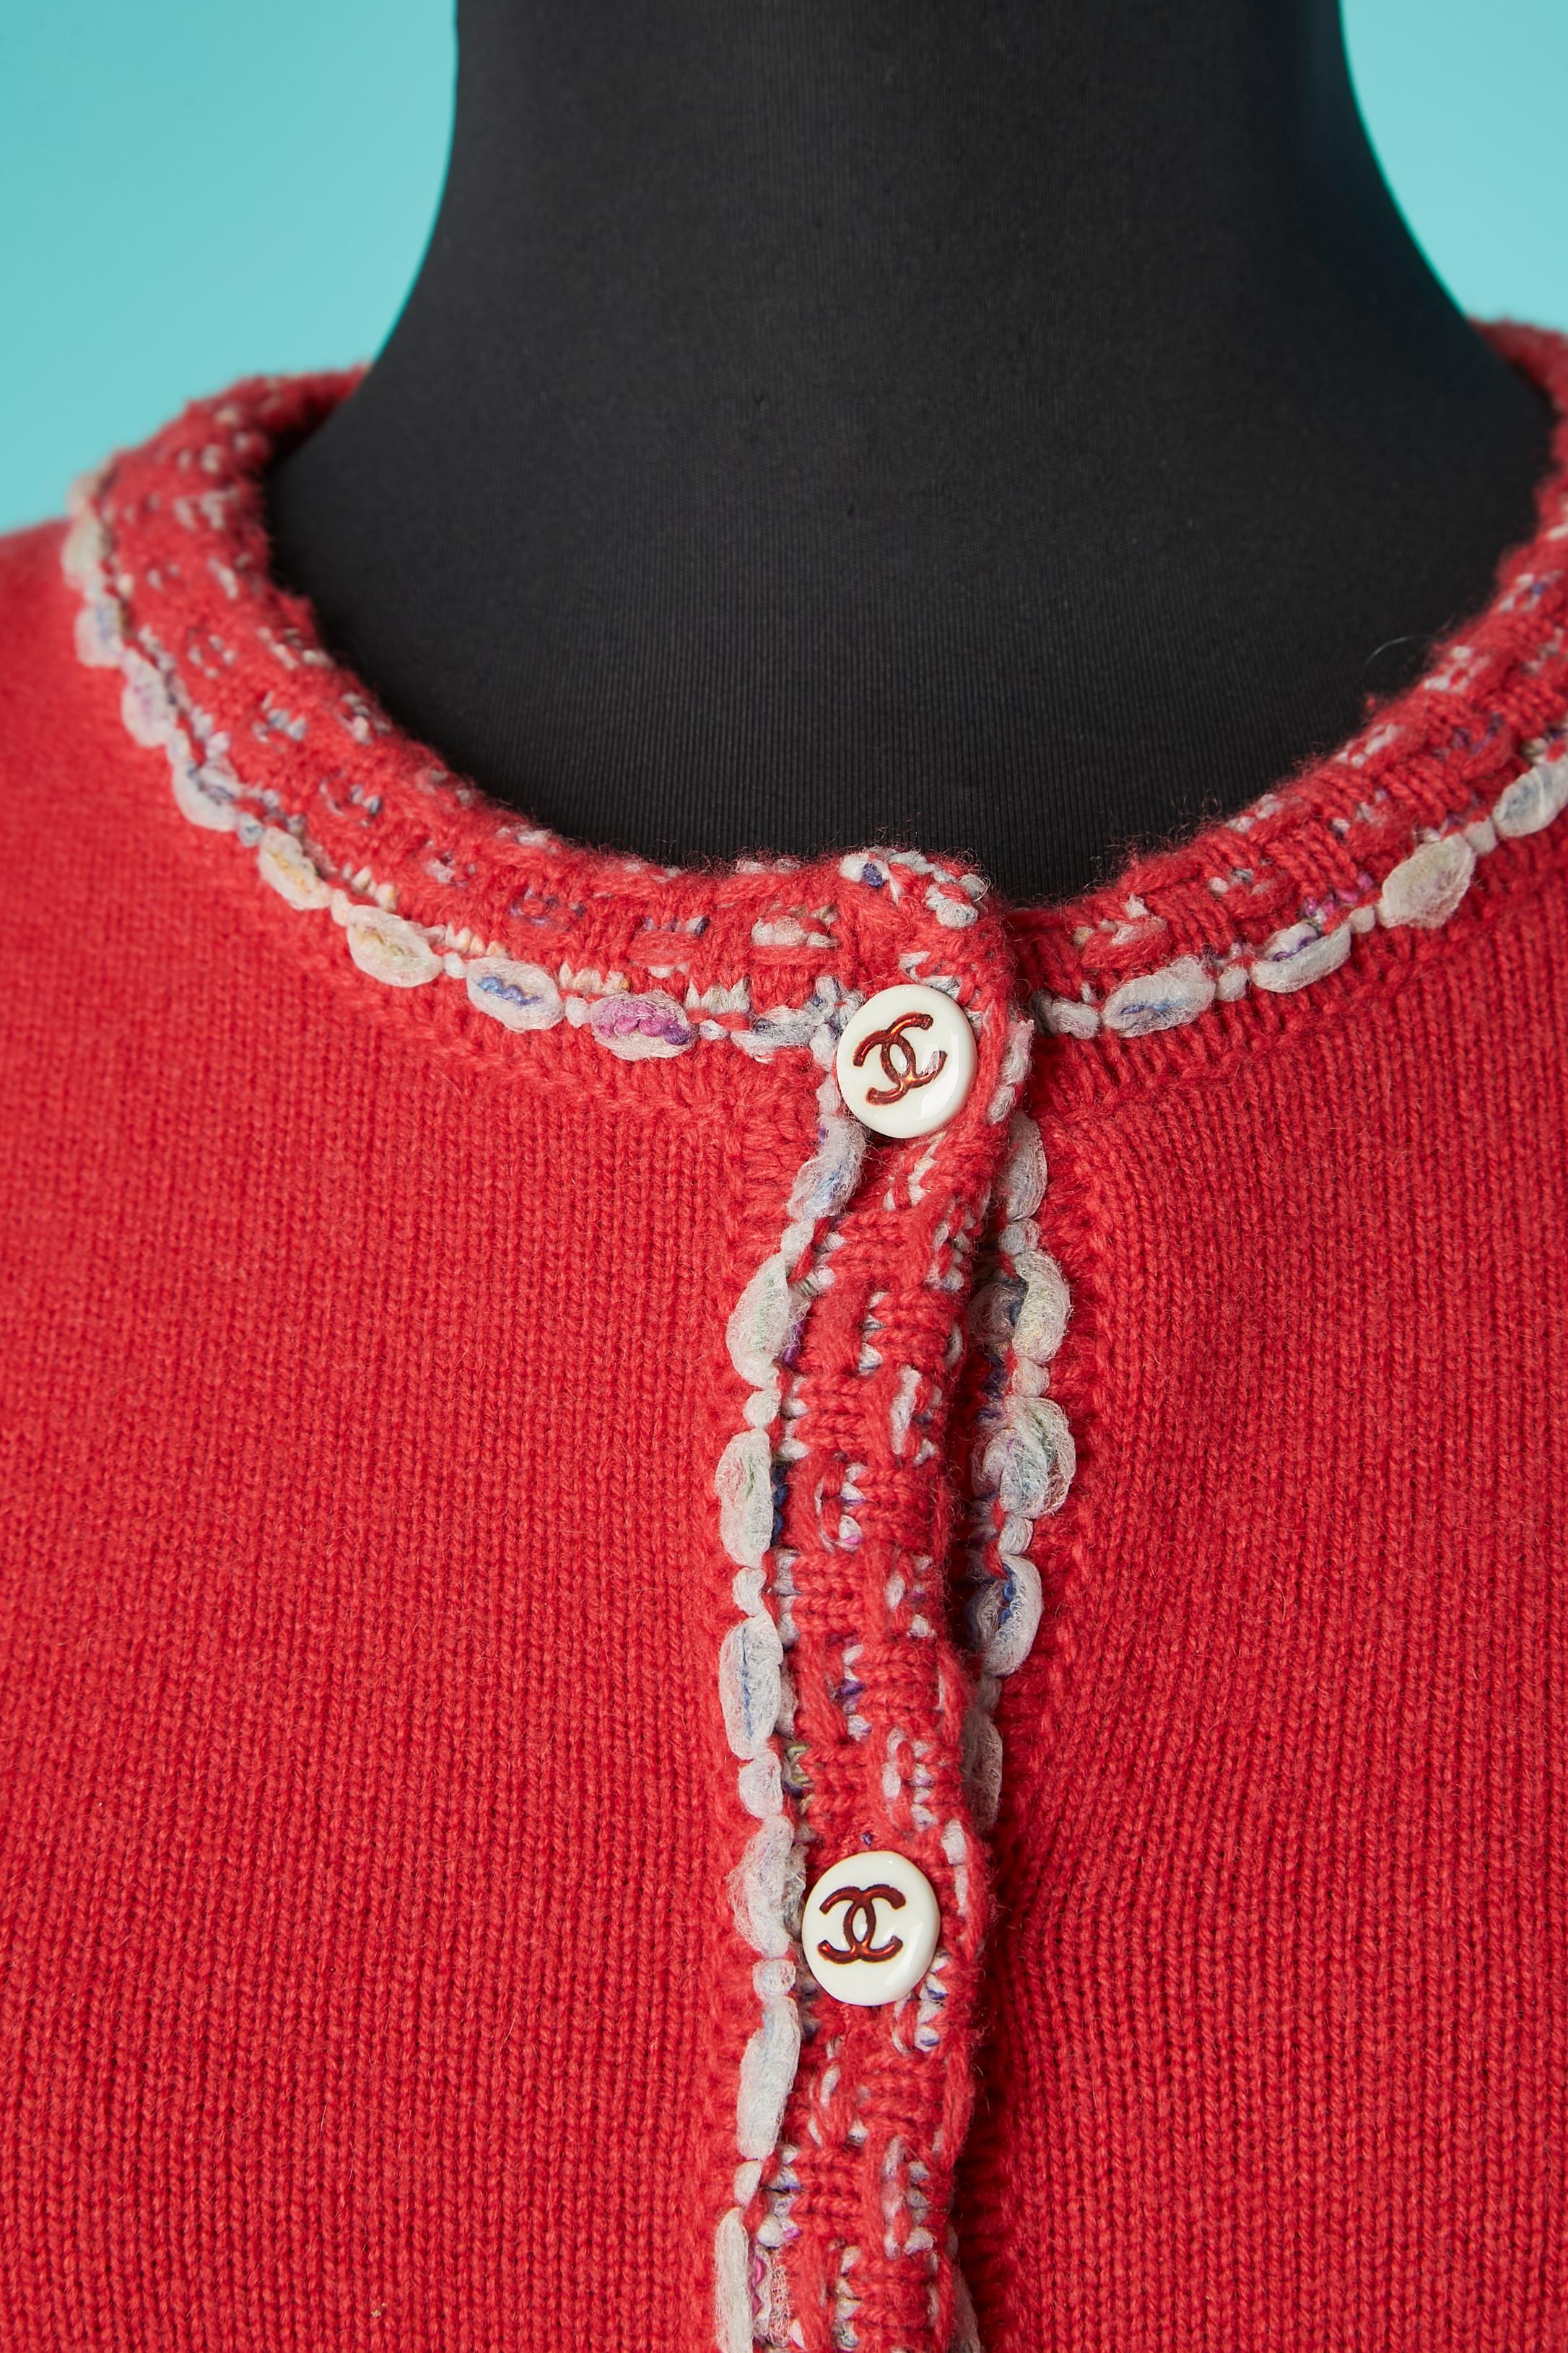 Cardigan en cachemire rouge-orangé avec boutons de marque et bord en maille tweed. Composition du tricot : 88% cachemire, 6% coton, 6% polyester. 
Pad d'épaule. 
TAILLE 46 (FR) L